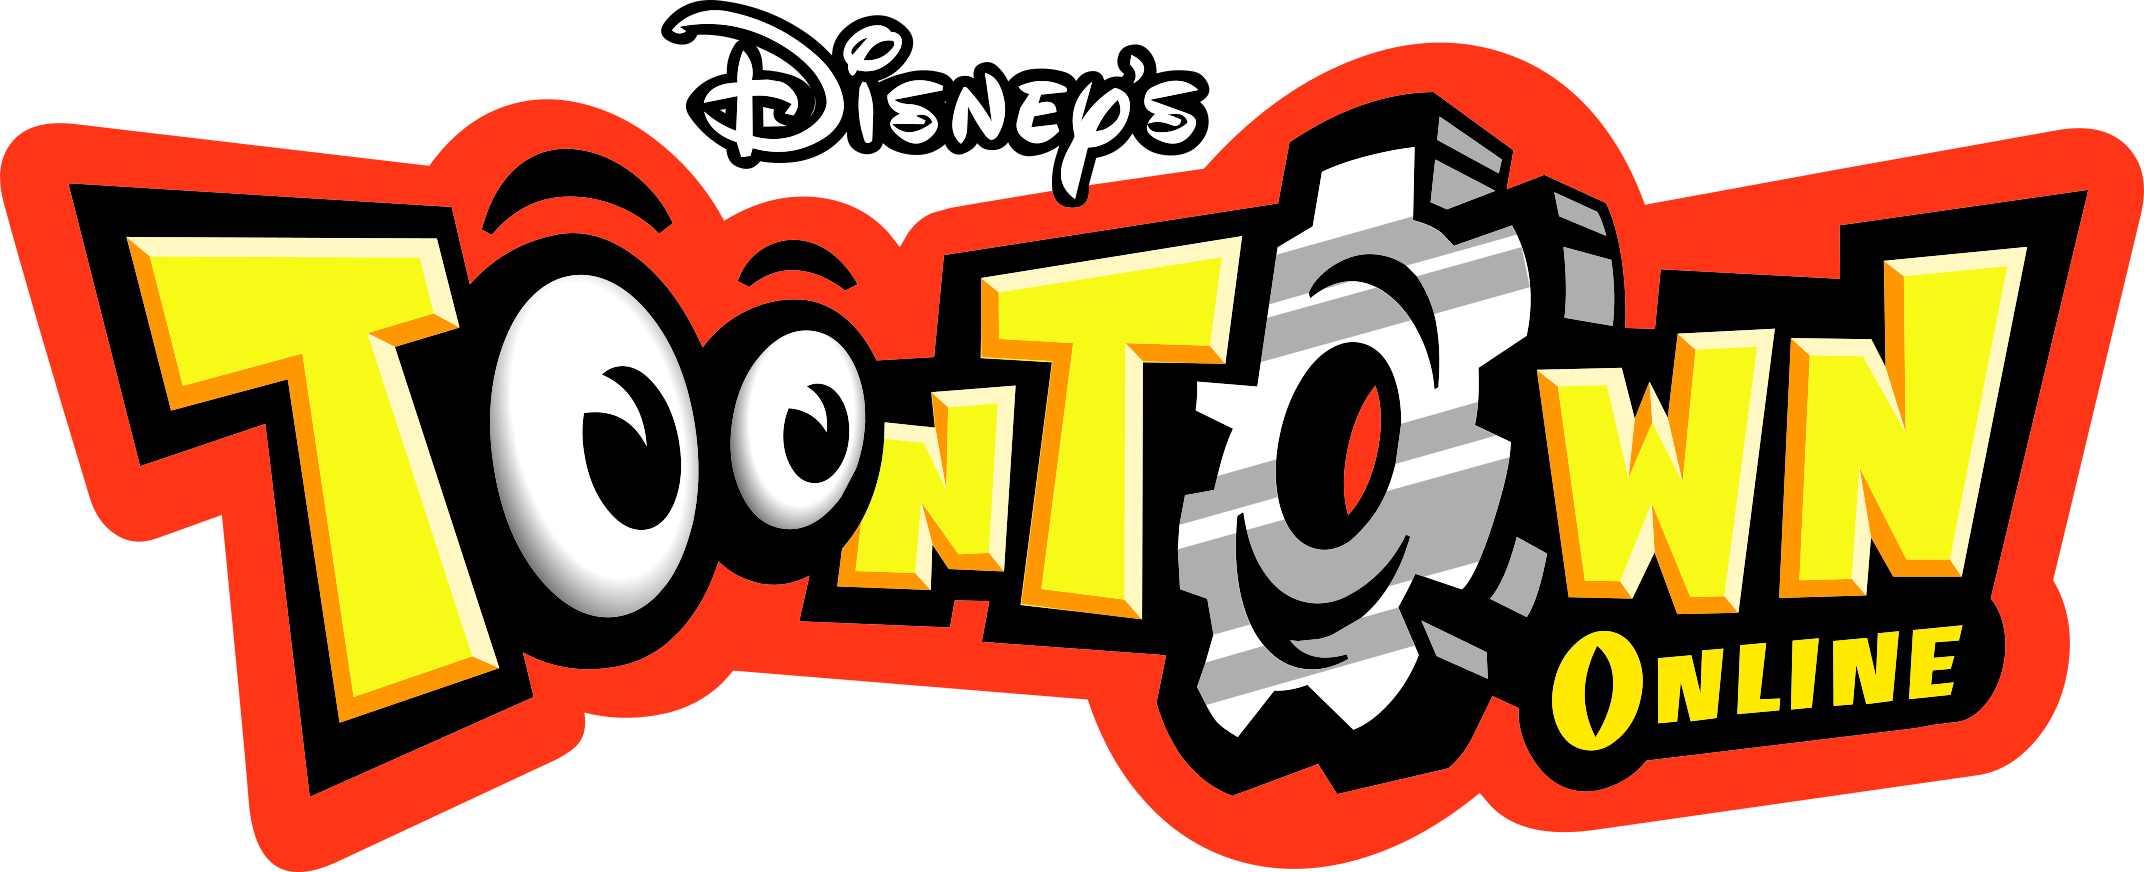 Disneys Toontown online